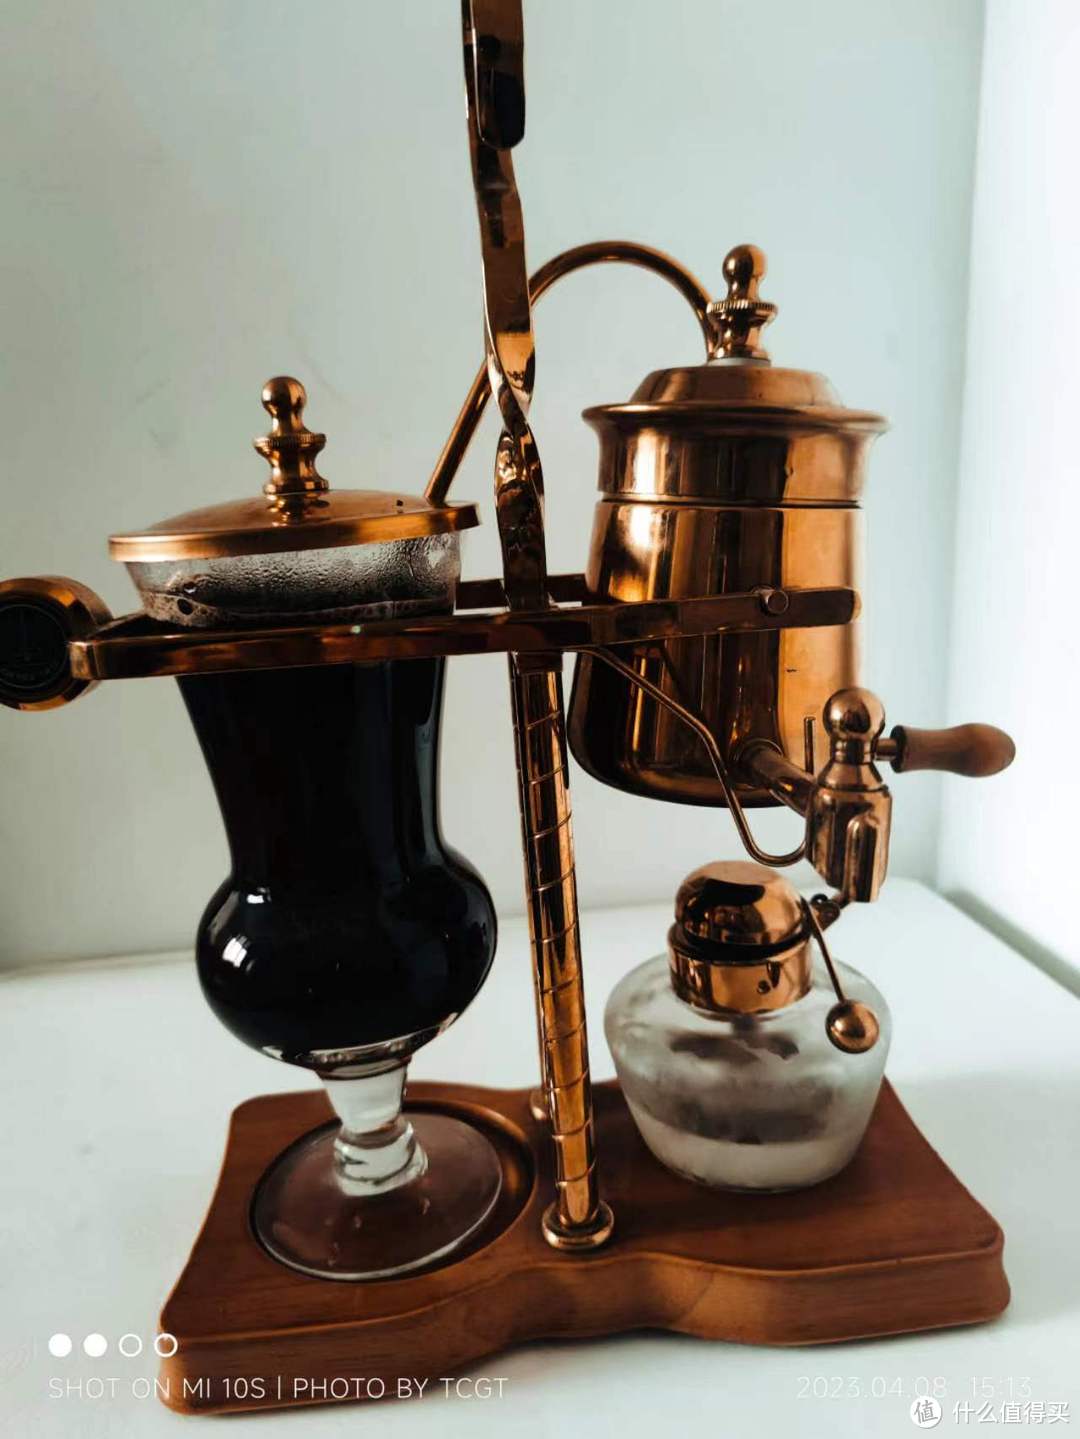 最有腔调的咖啡器具——比利时壶